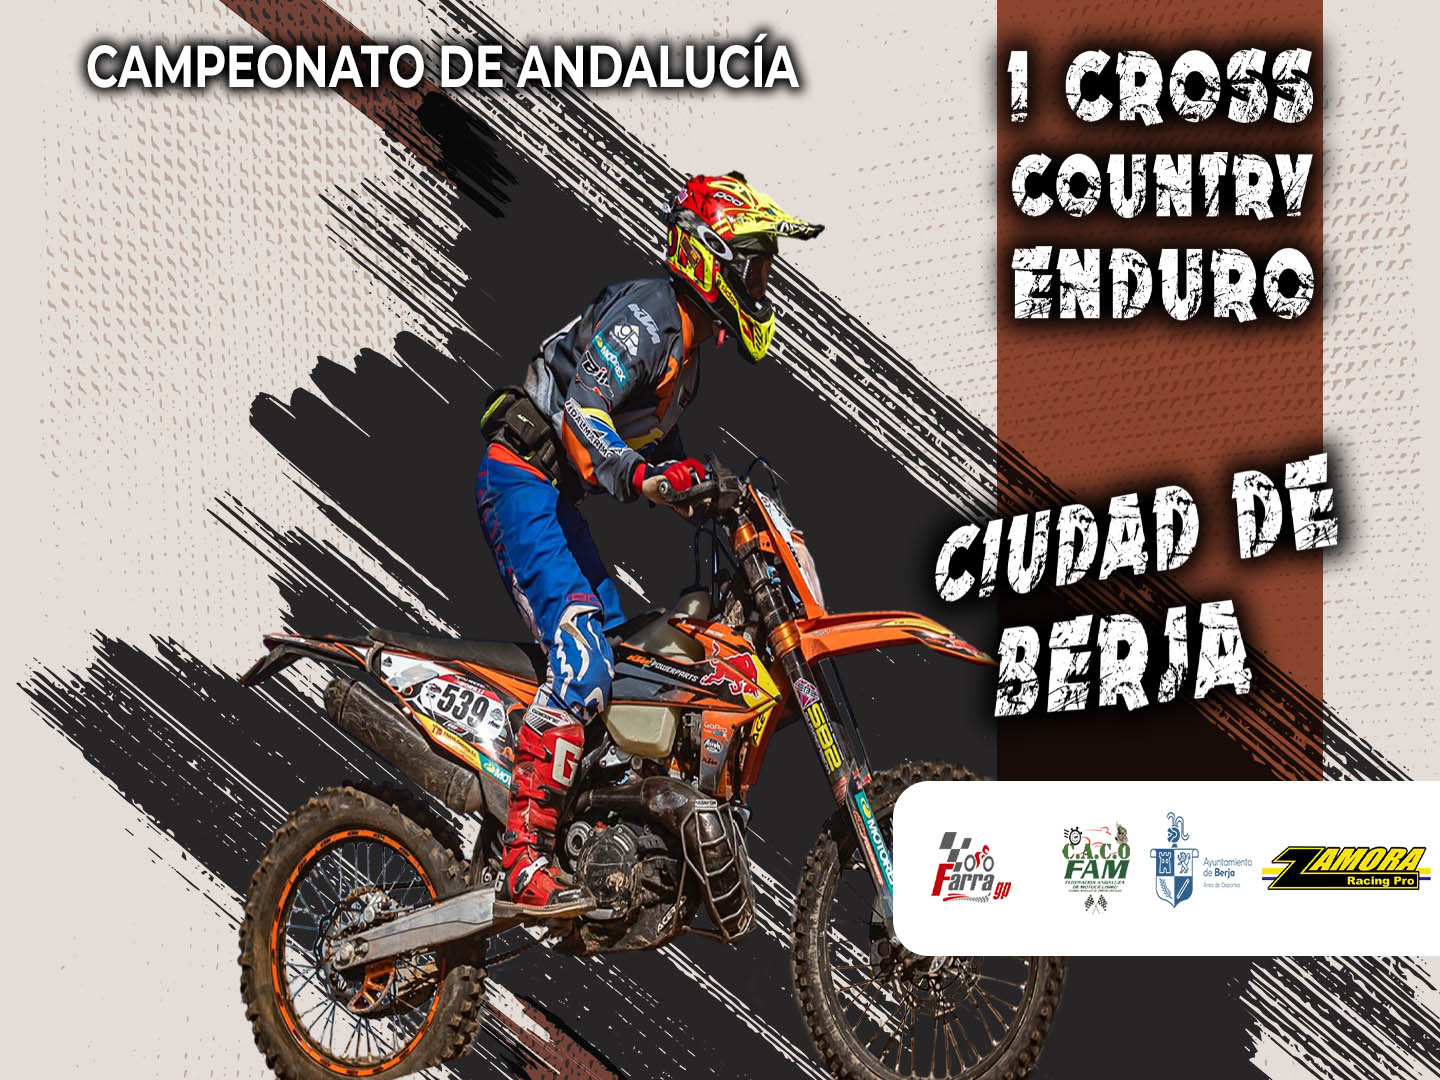 La final del Campeonato Andaluz de Cross Country se disputa este domingo en Berja